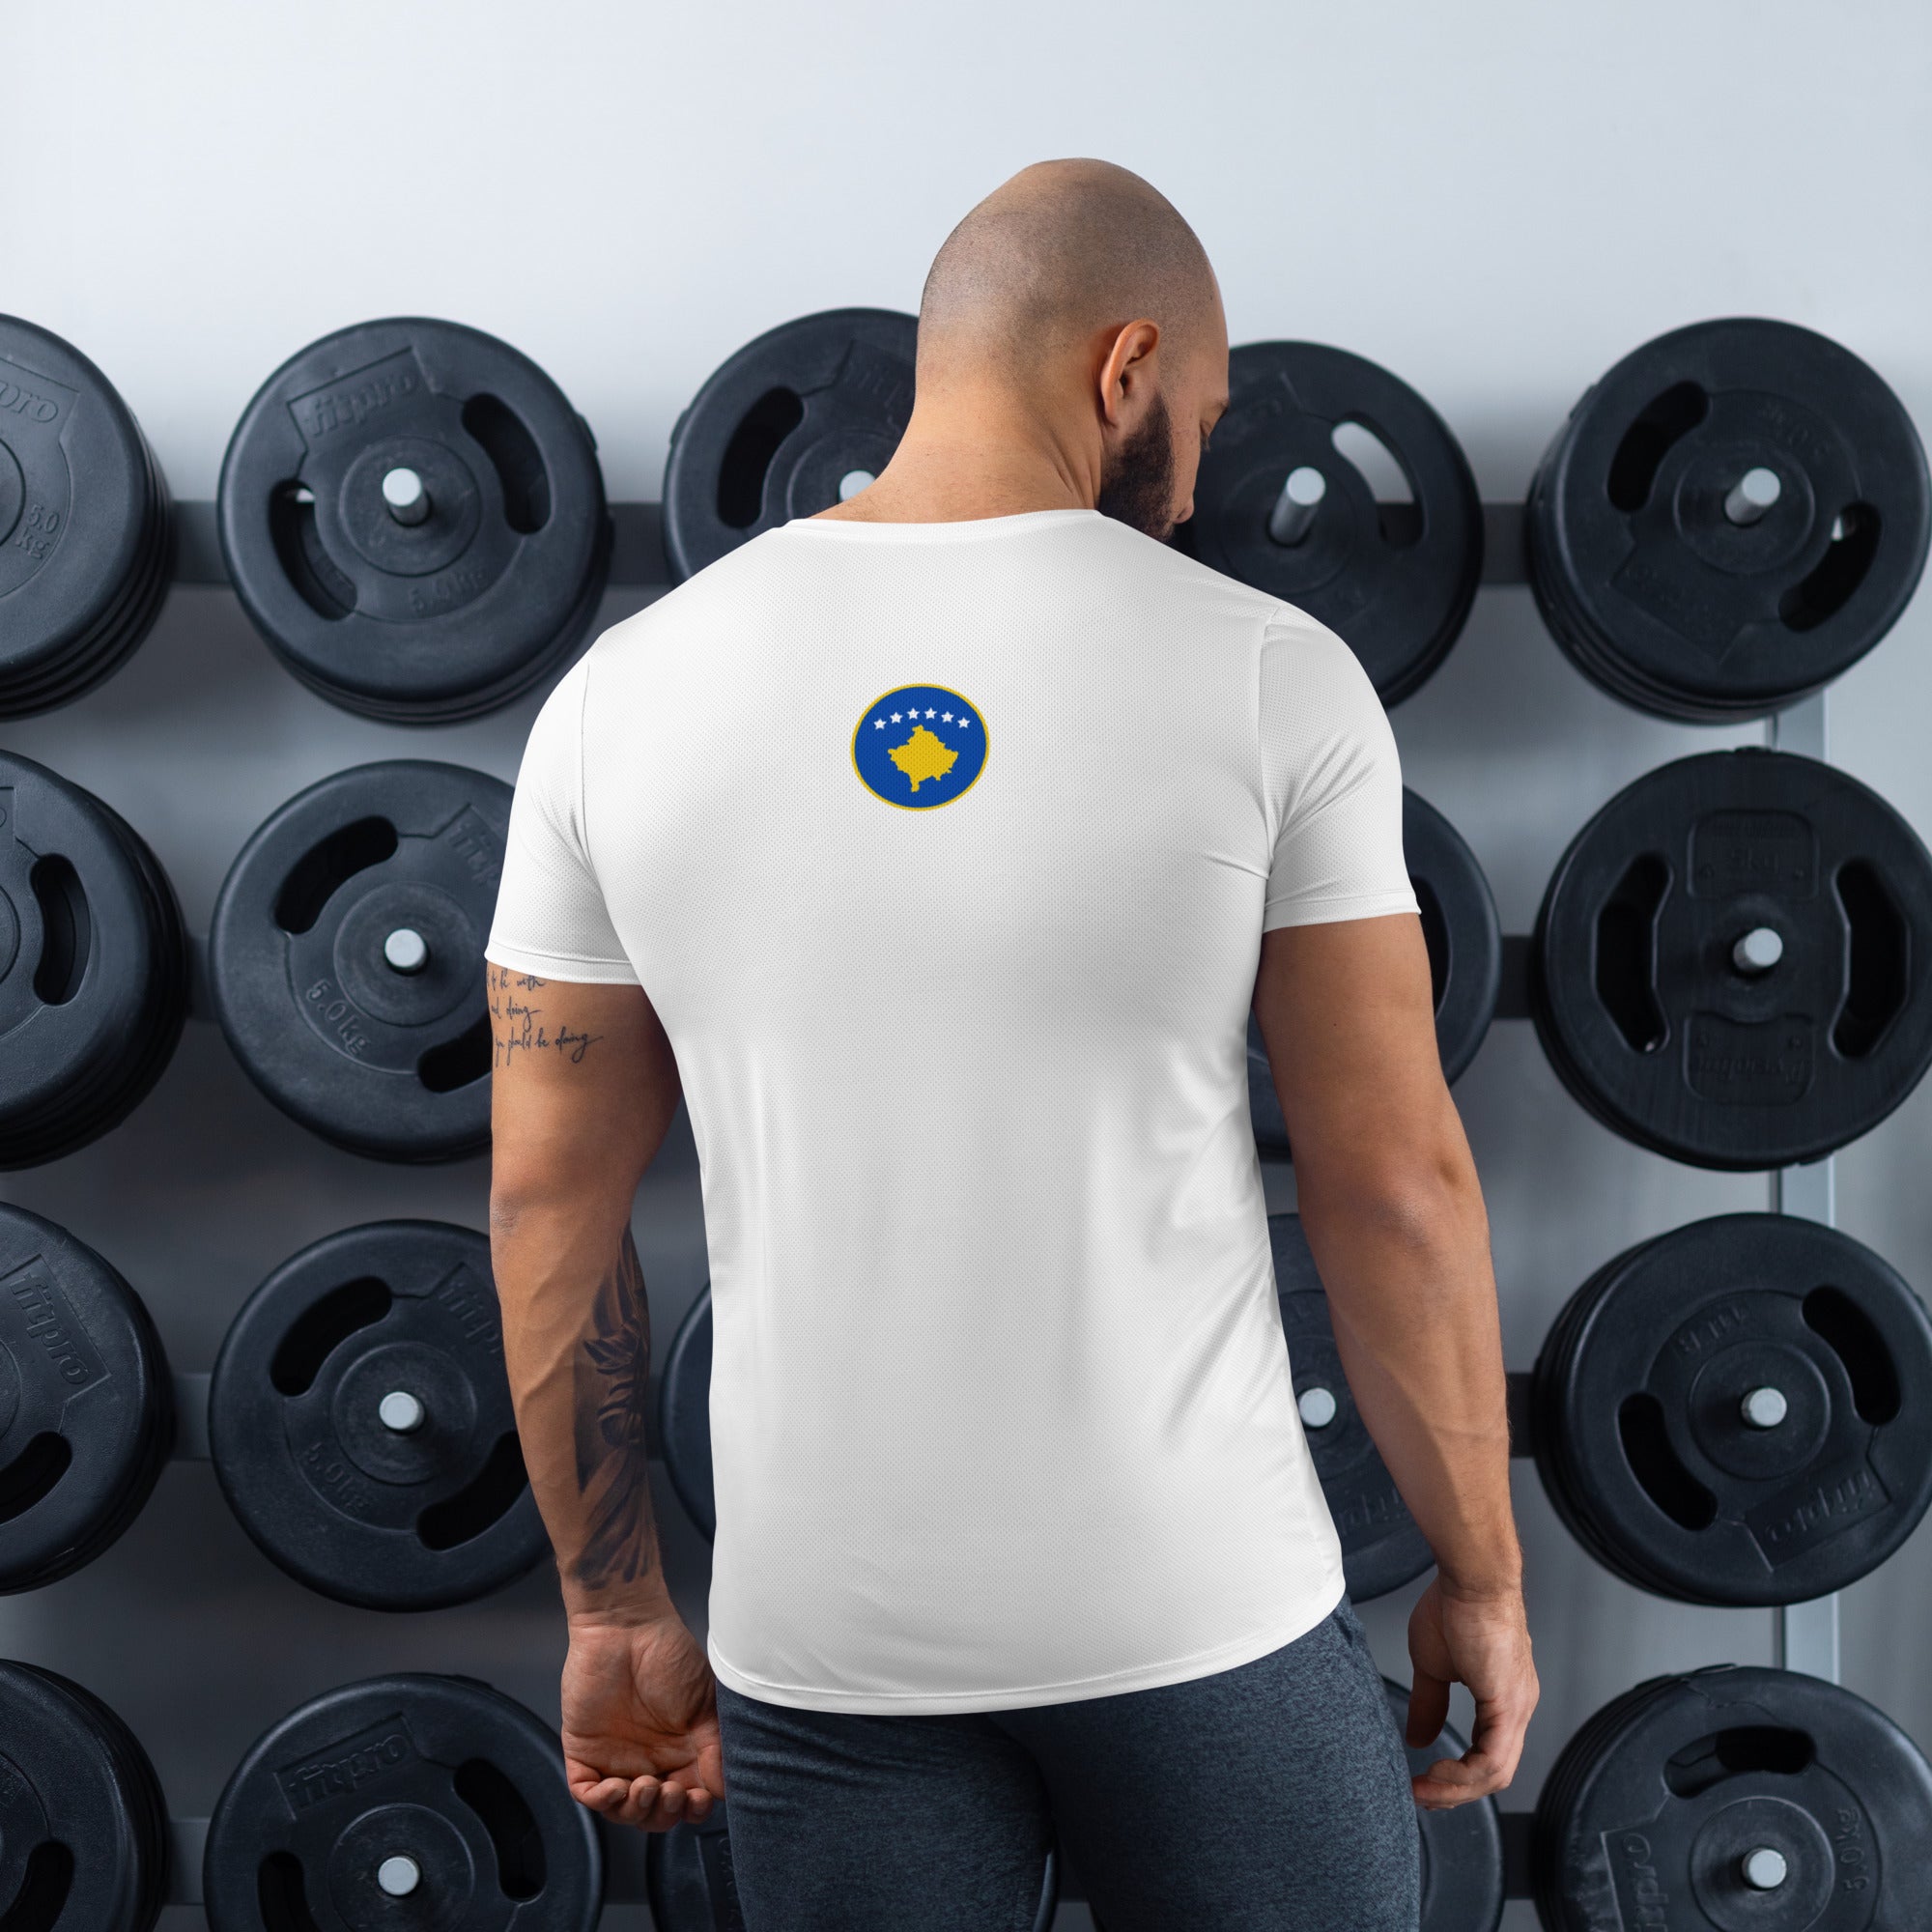 Kosova flag All-Over Print Men's Athletic T-shirt